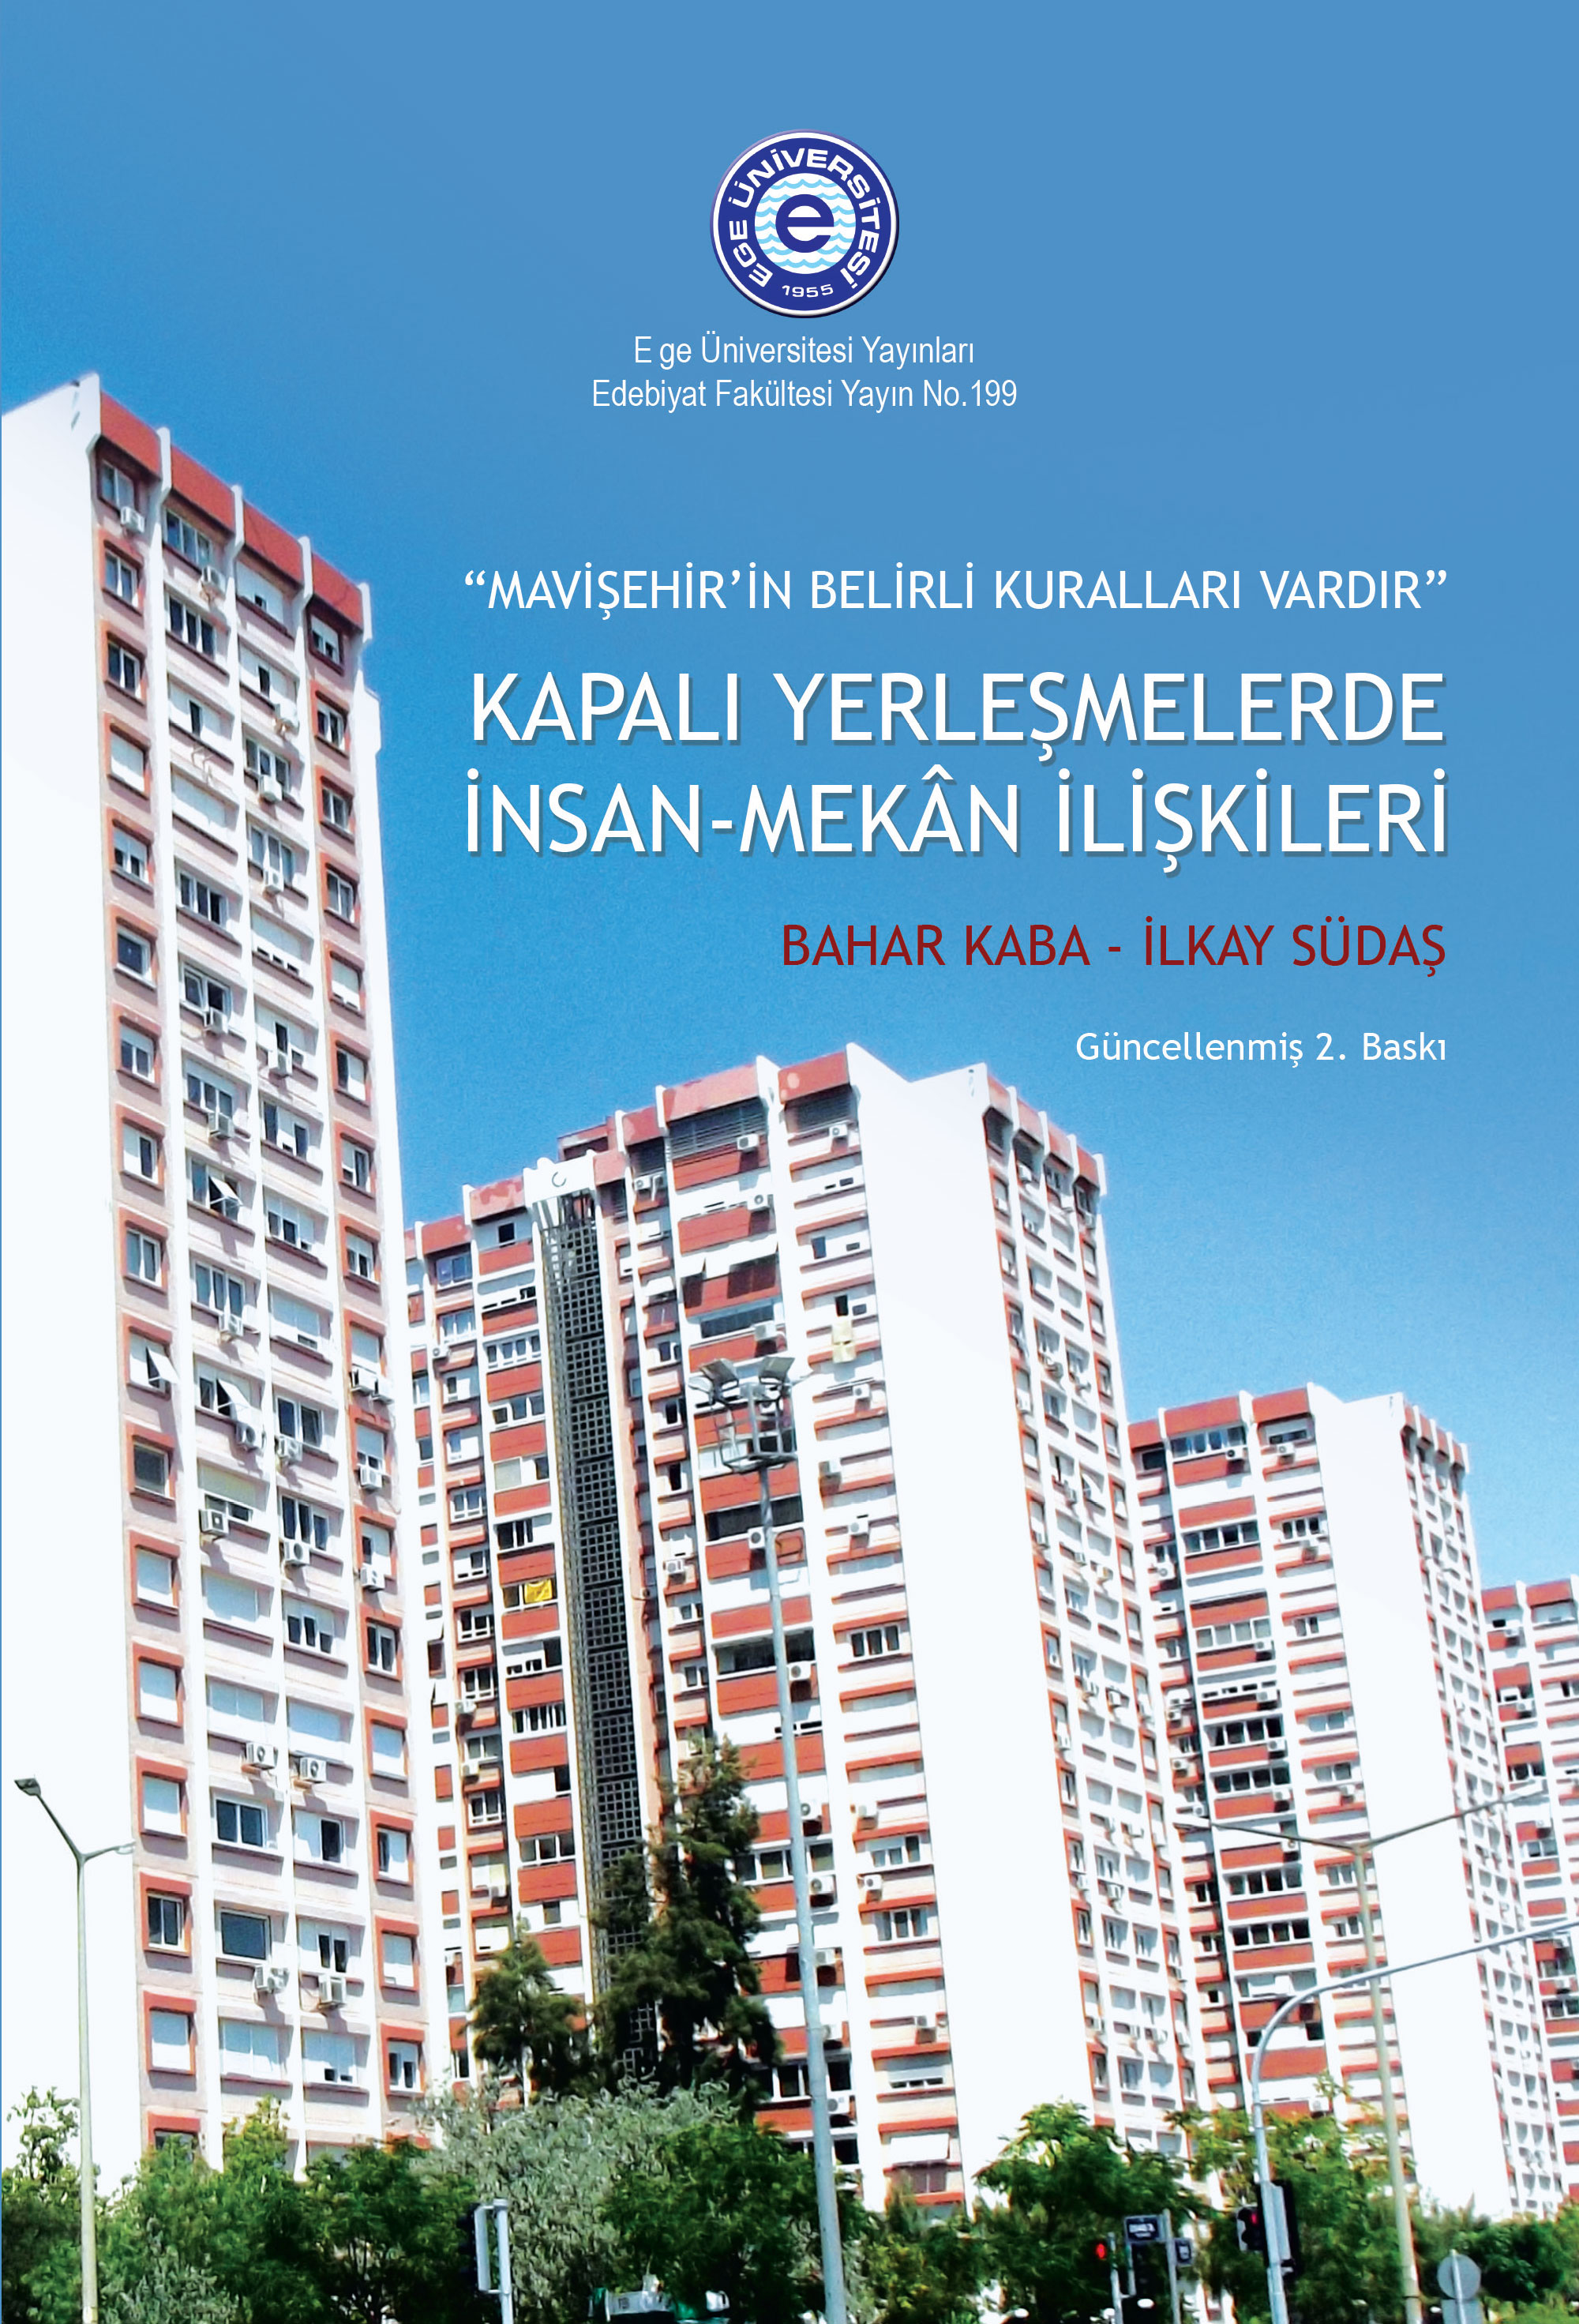 Mavişehir'in Belirli Kuralları Vardır: Kapalı yerleşmelerde İnsan-Mekan ilişkileri (Güncellenmiş) 